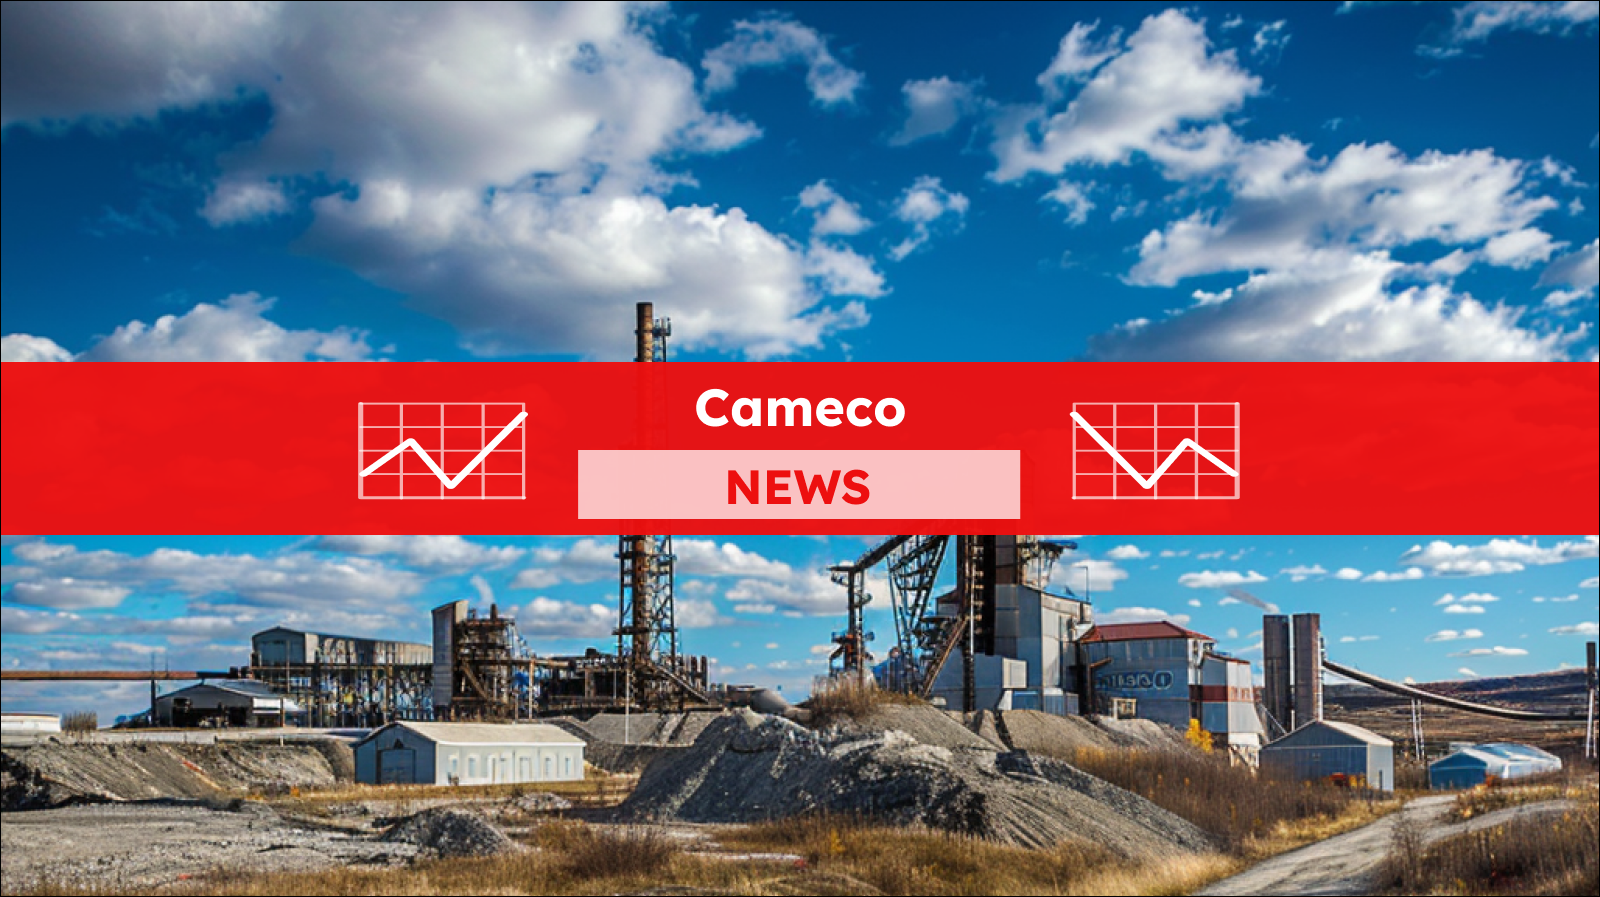 Eine industrielle Bergbauanlage unter einem blauen Himmel mit zerstreuten Wolken, mit einem Cameco NEWS Banner